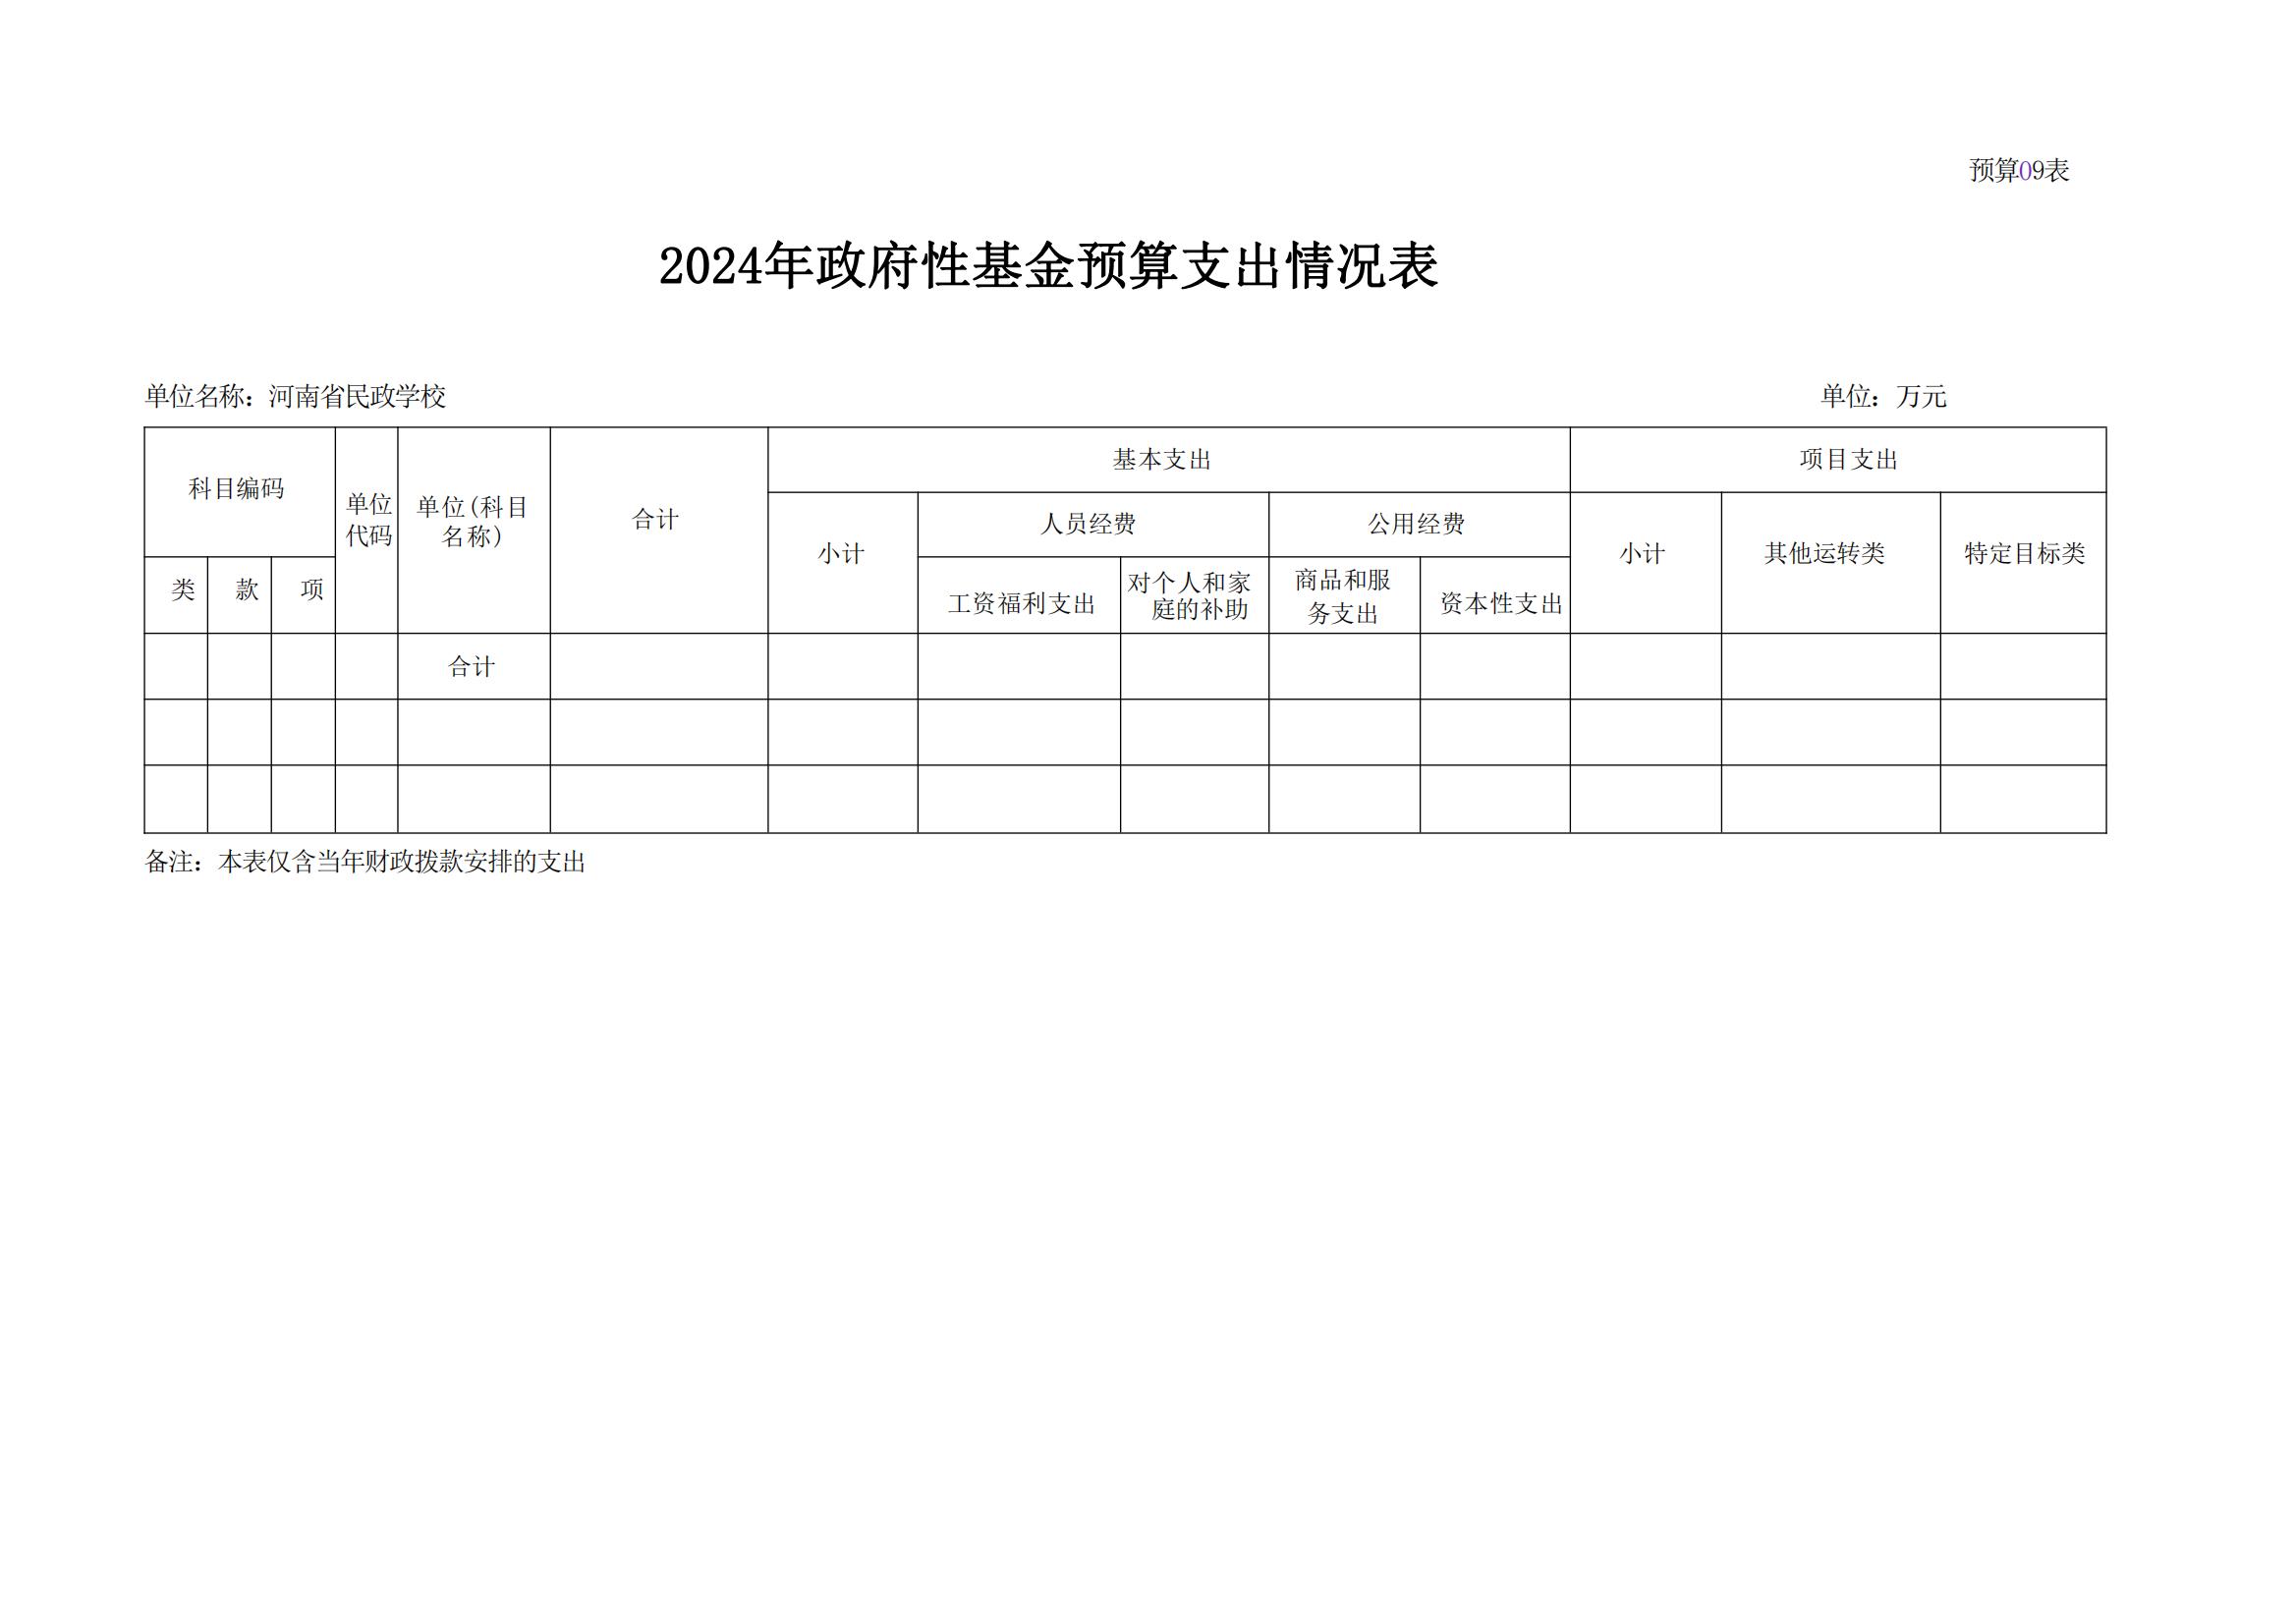 河南省民政学校2024年部门预算公开(1)_19.jpg